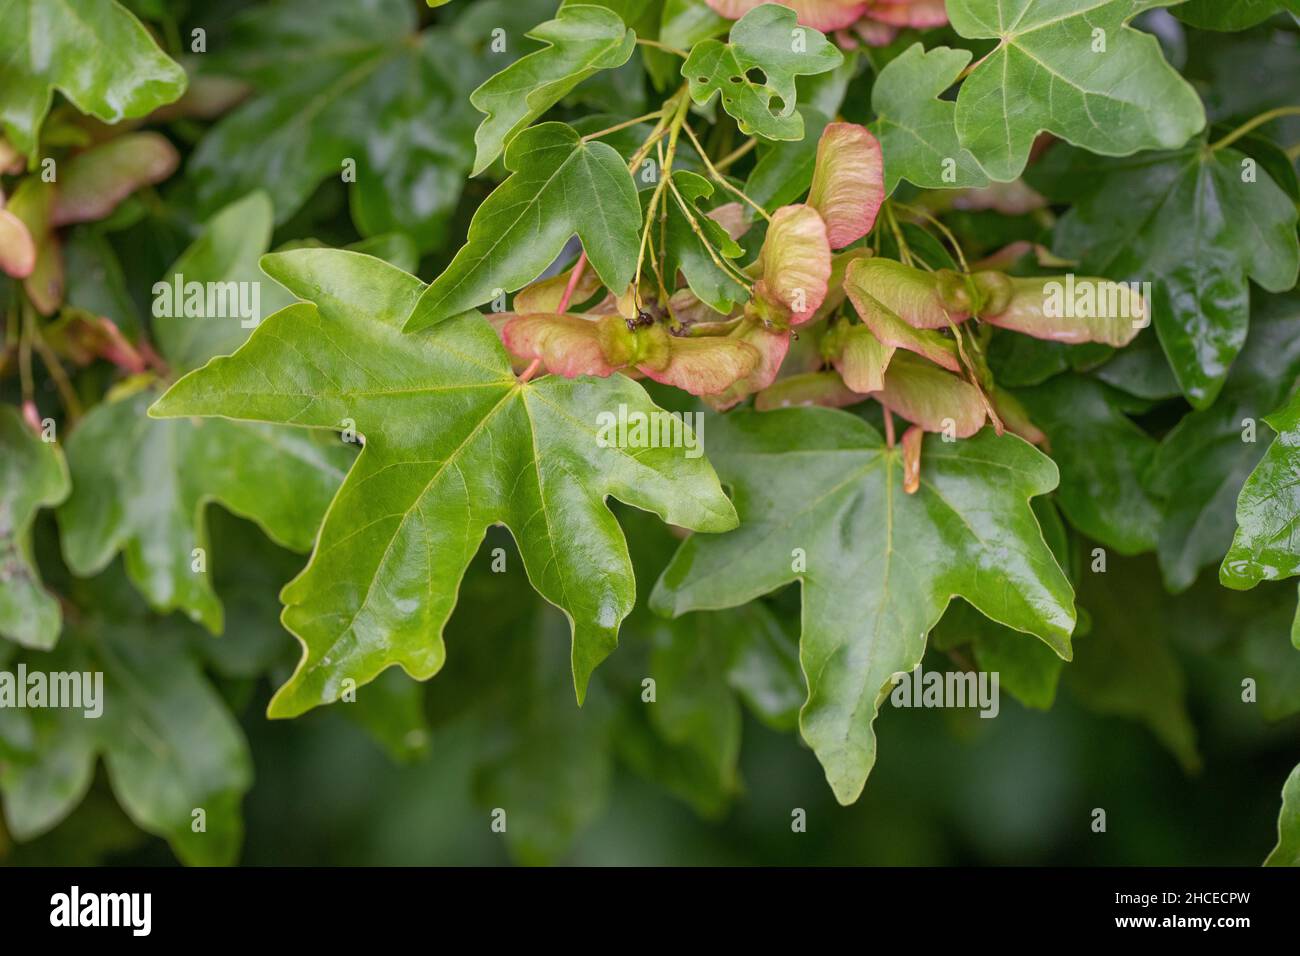 Feldmahorn. (Acer campestre). Blätter im Sommer mit wachsenden paarigen geflügelten Früchten, die die Samen enthalten. Blatt, Laub, typische geformte Flügel gefärbt. Stockfoto